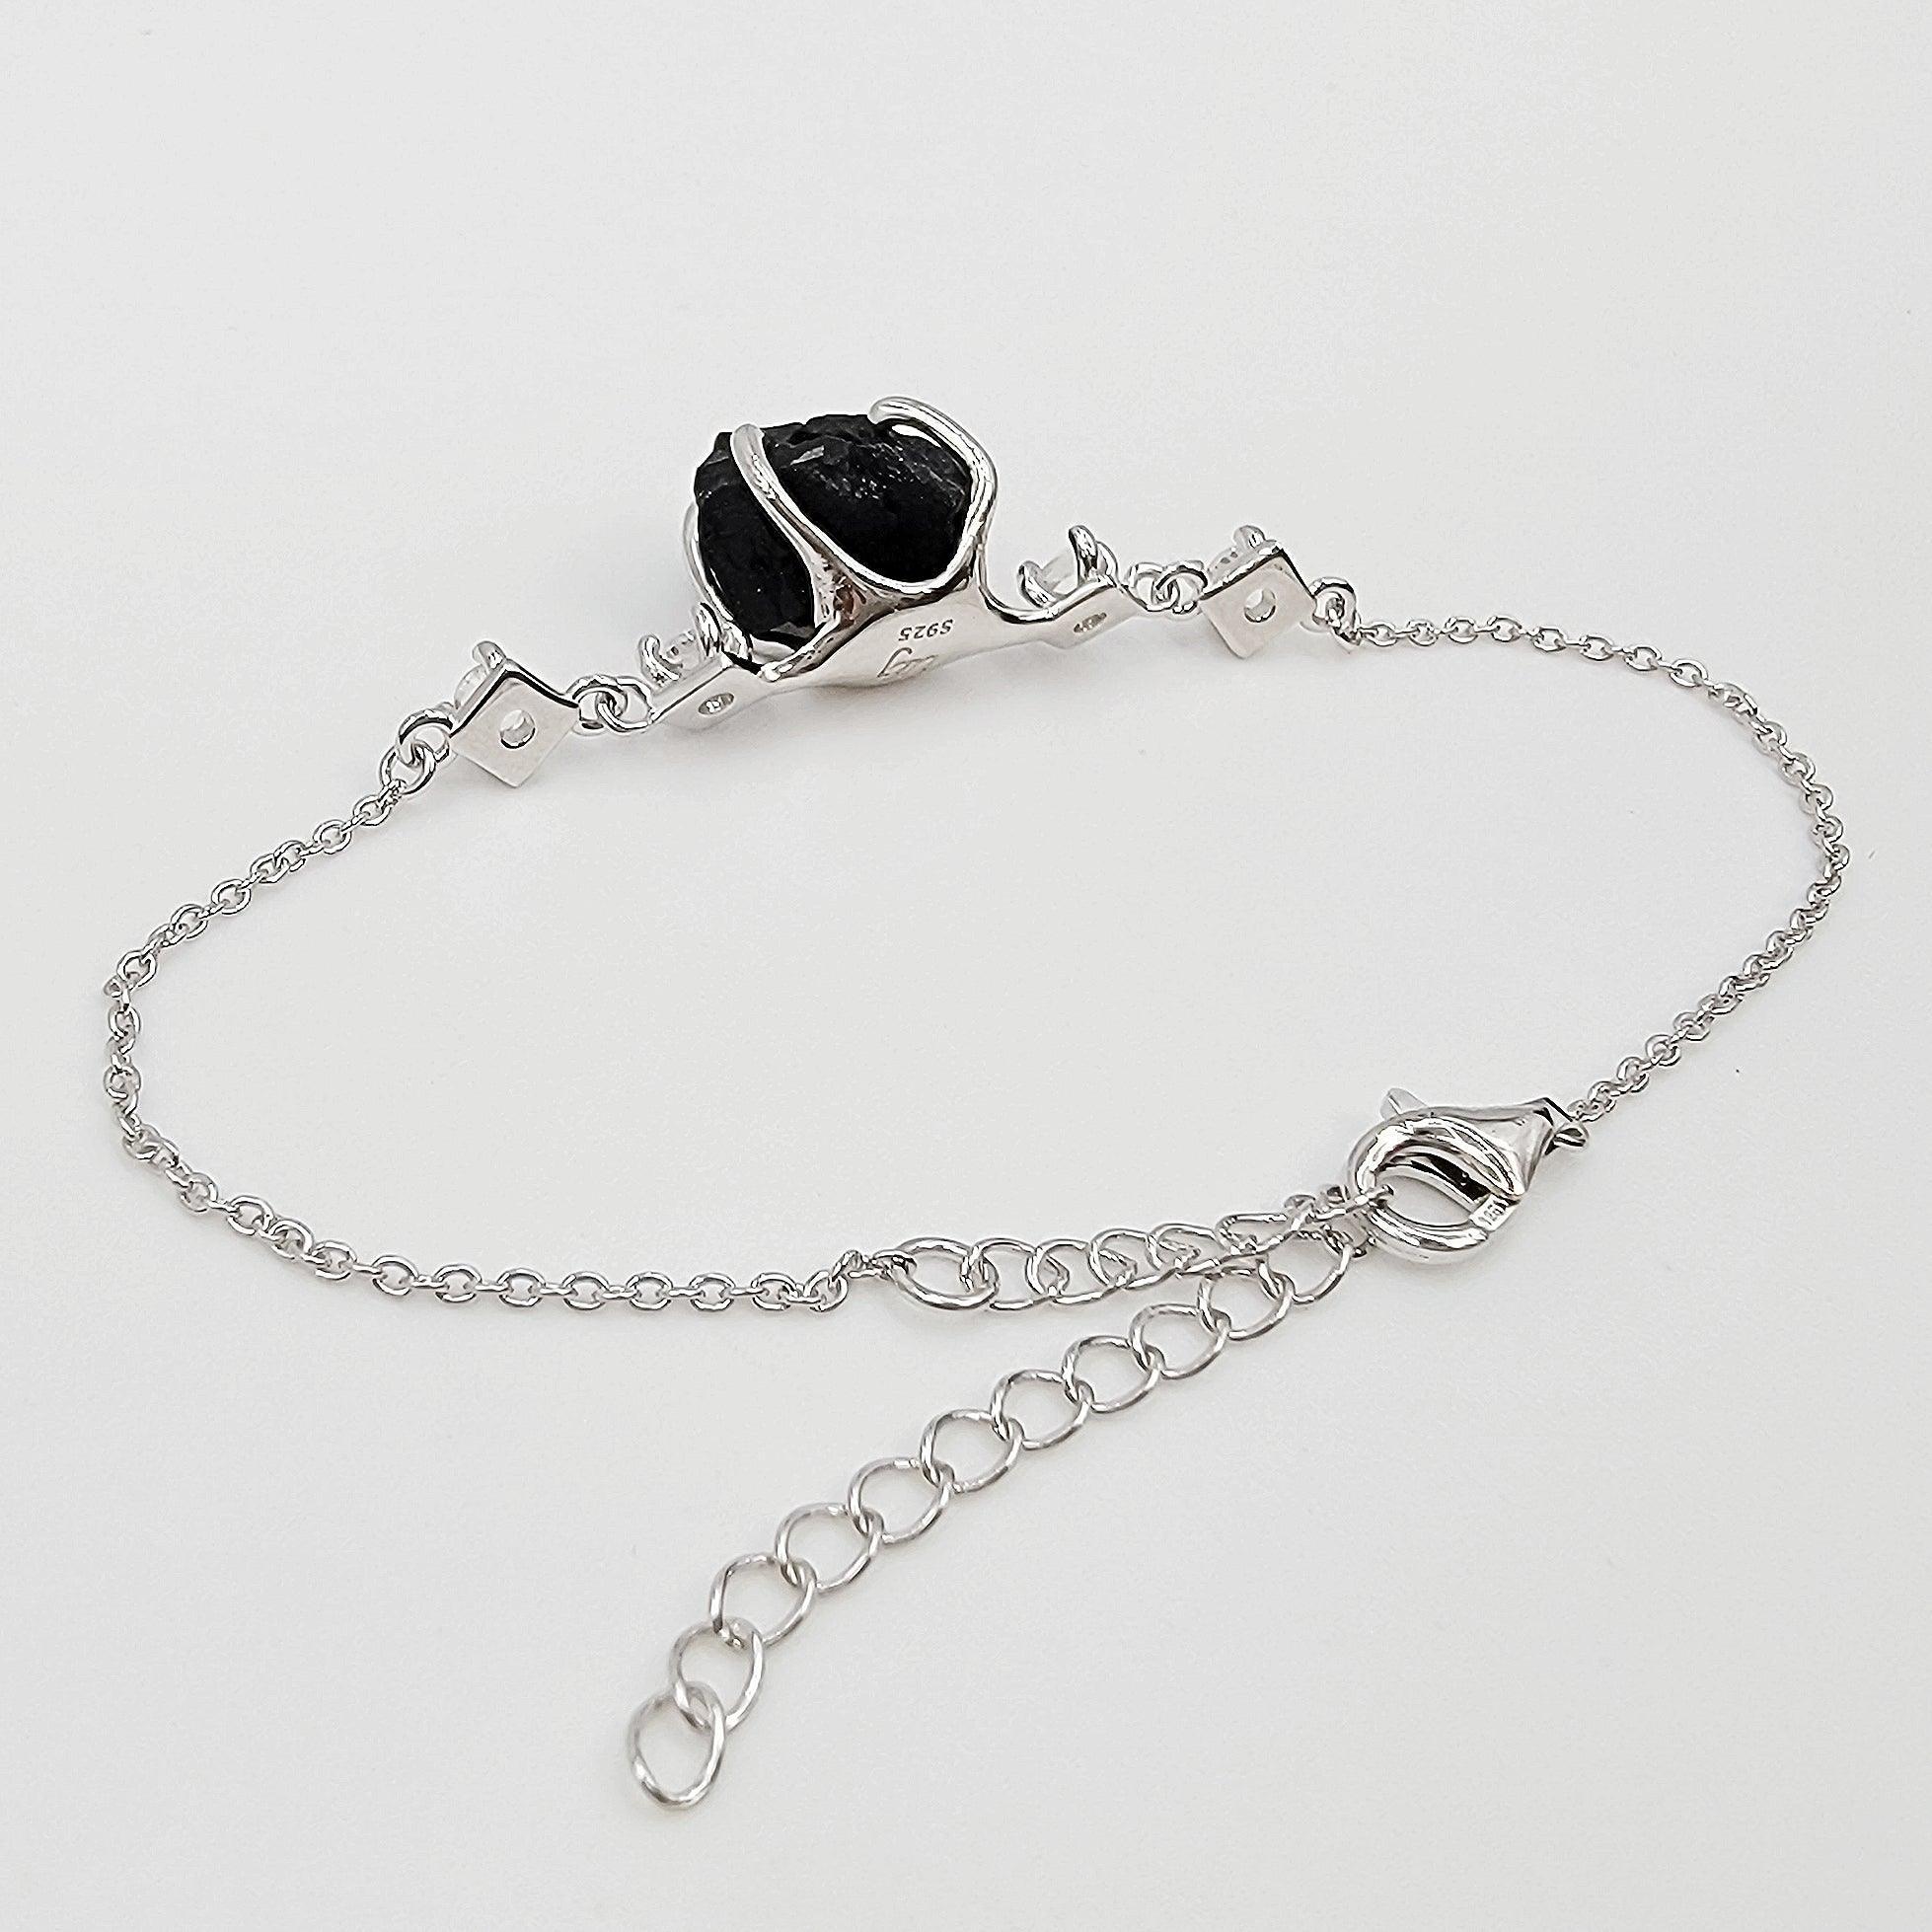 Raw Black Tourmaline Chain Bracelet - Uniquelan Jewelry